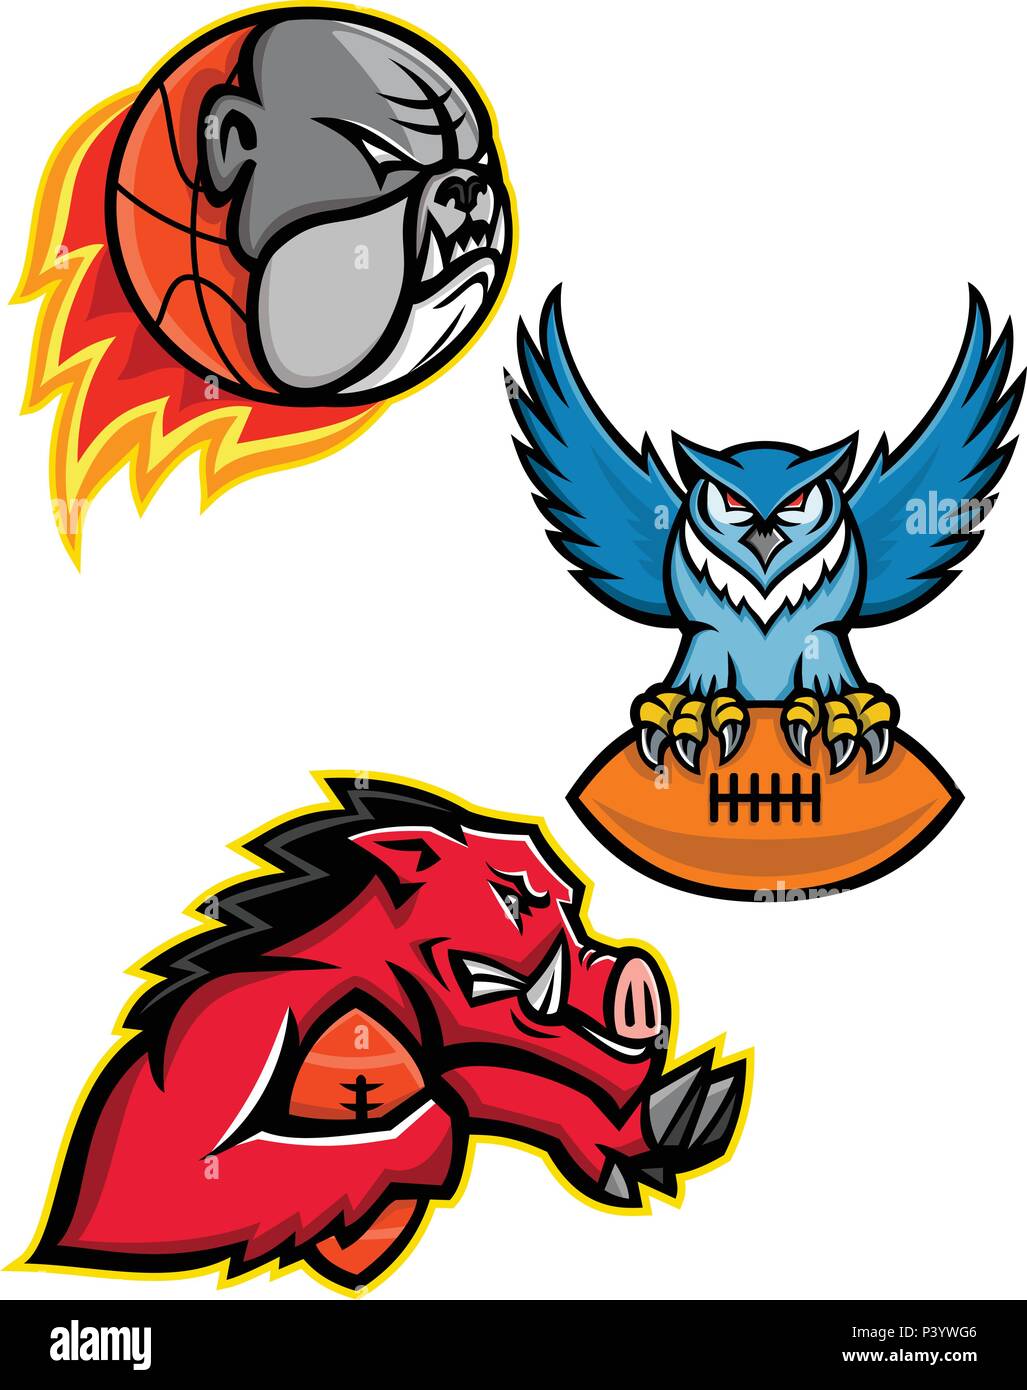 Il Mascot icona set illustrazione del football americano o graticola e pallacanestro mascotte di sport come il bulldog, grande gufo cornuto stringendo la sfera e il rasoio Illustrazione Vettoriale